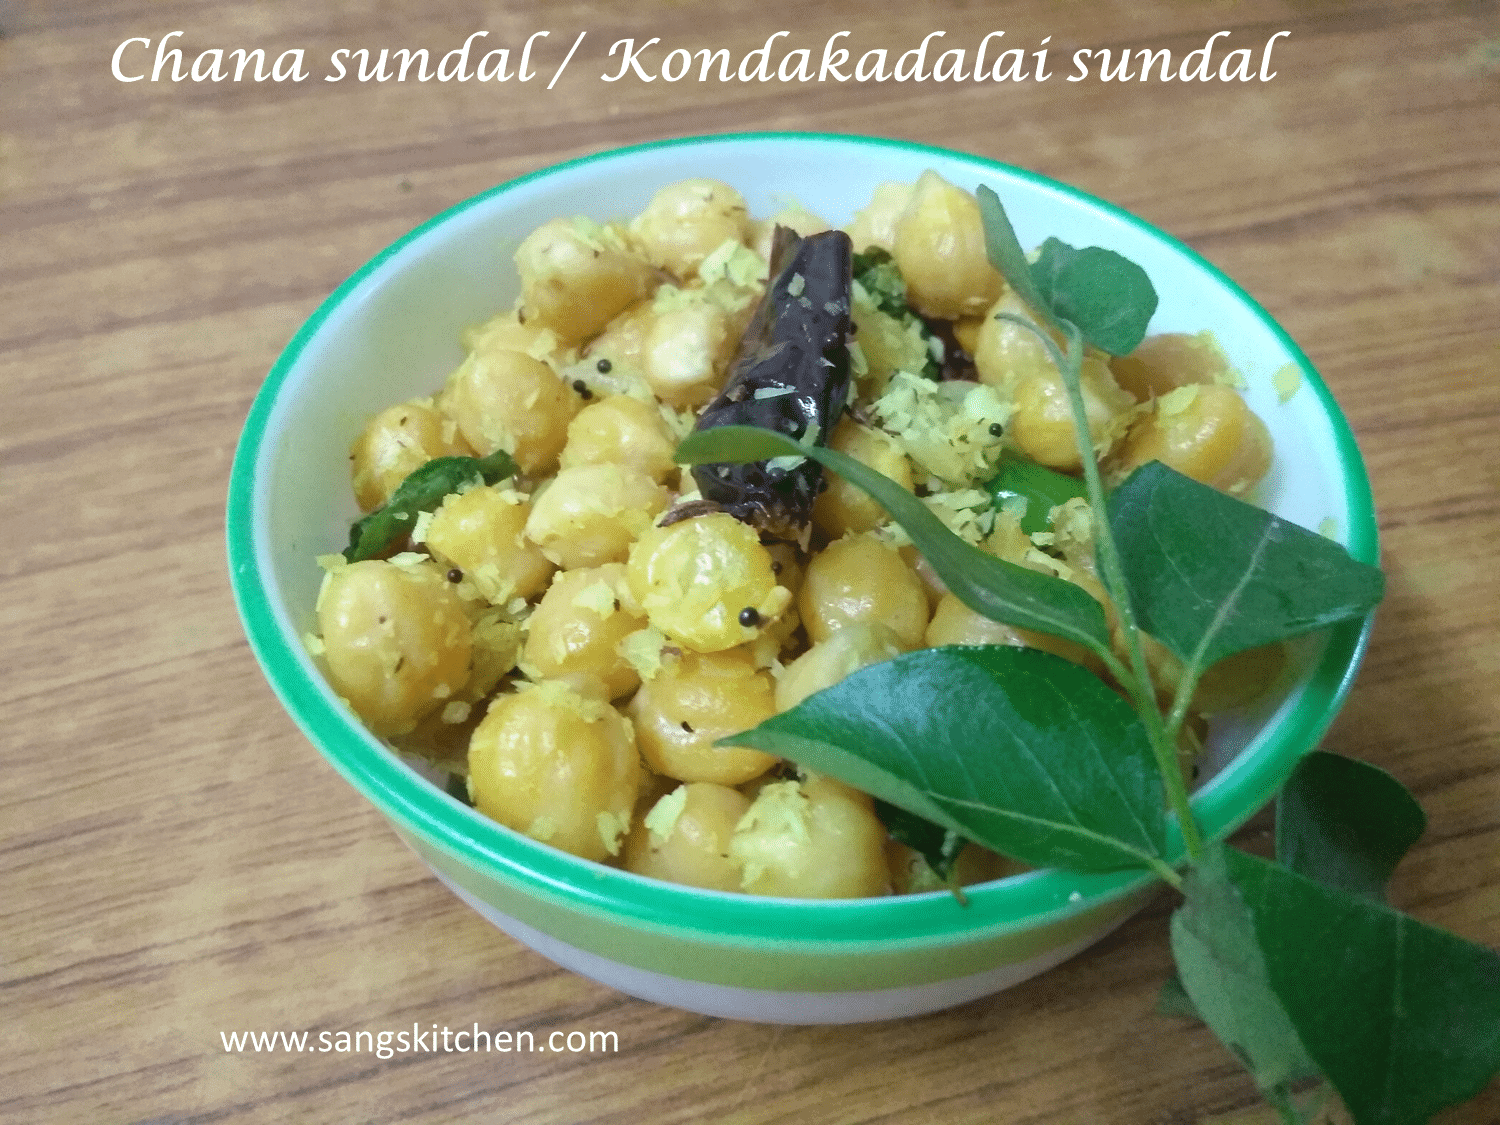 Sundal recipe | How to make kondakadalai sundal | White chana stir fry